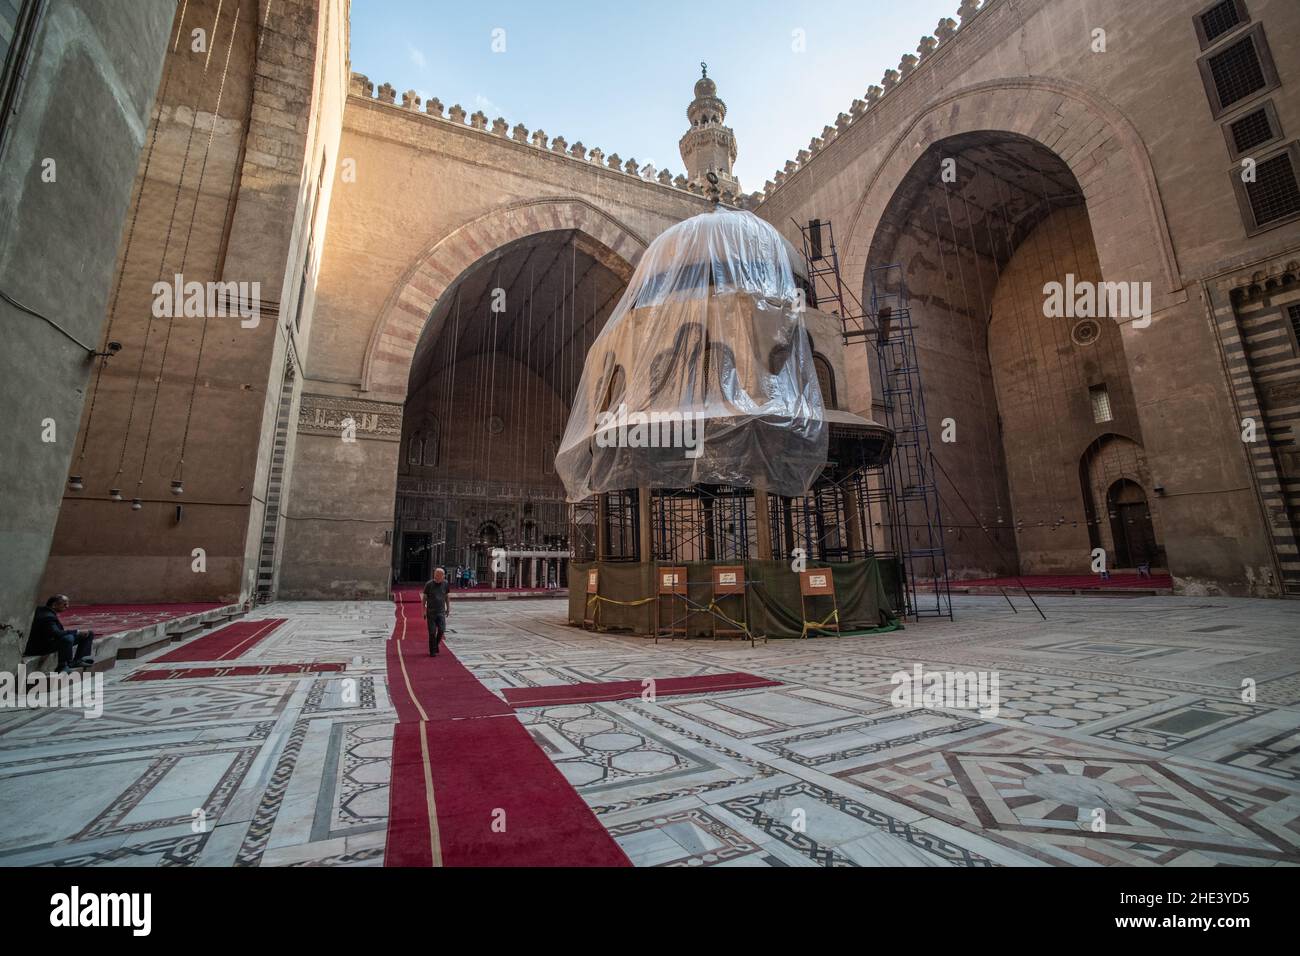 Der Innenhof und der Brunnen der alten Moschee Madrasa von Sultan Hassan in Kairo, die als eines der größten islamischen Gebäude der Welt angesehen wird. Stockfoto